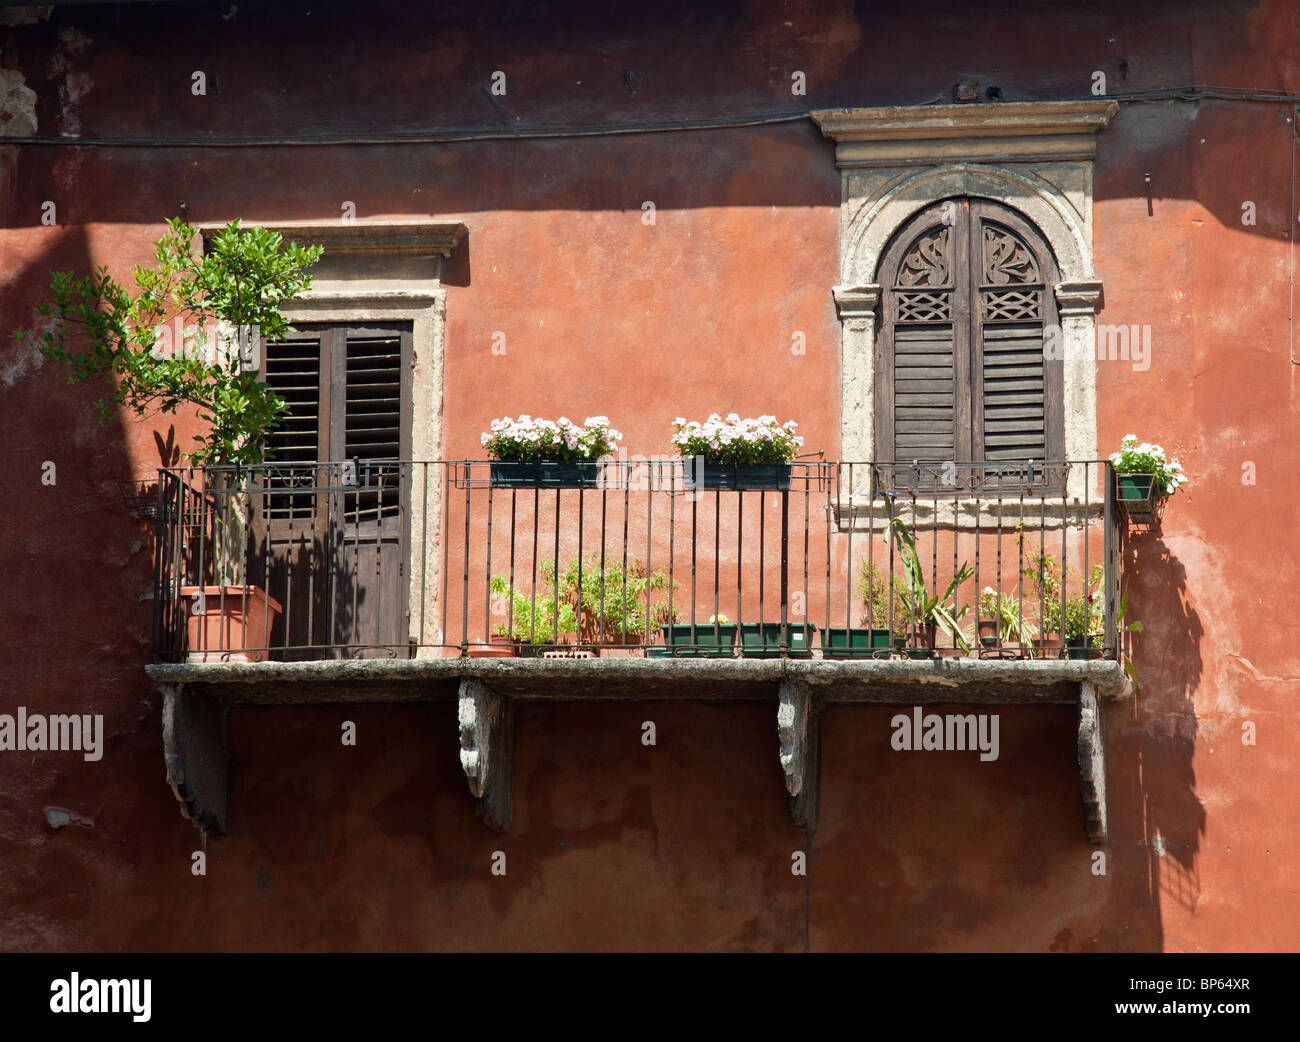 Balcon sur une maison ancienne à Vérone, Italie Banque D'Images